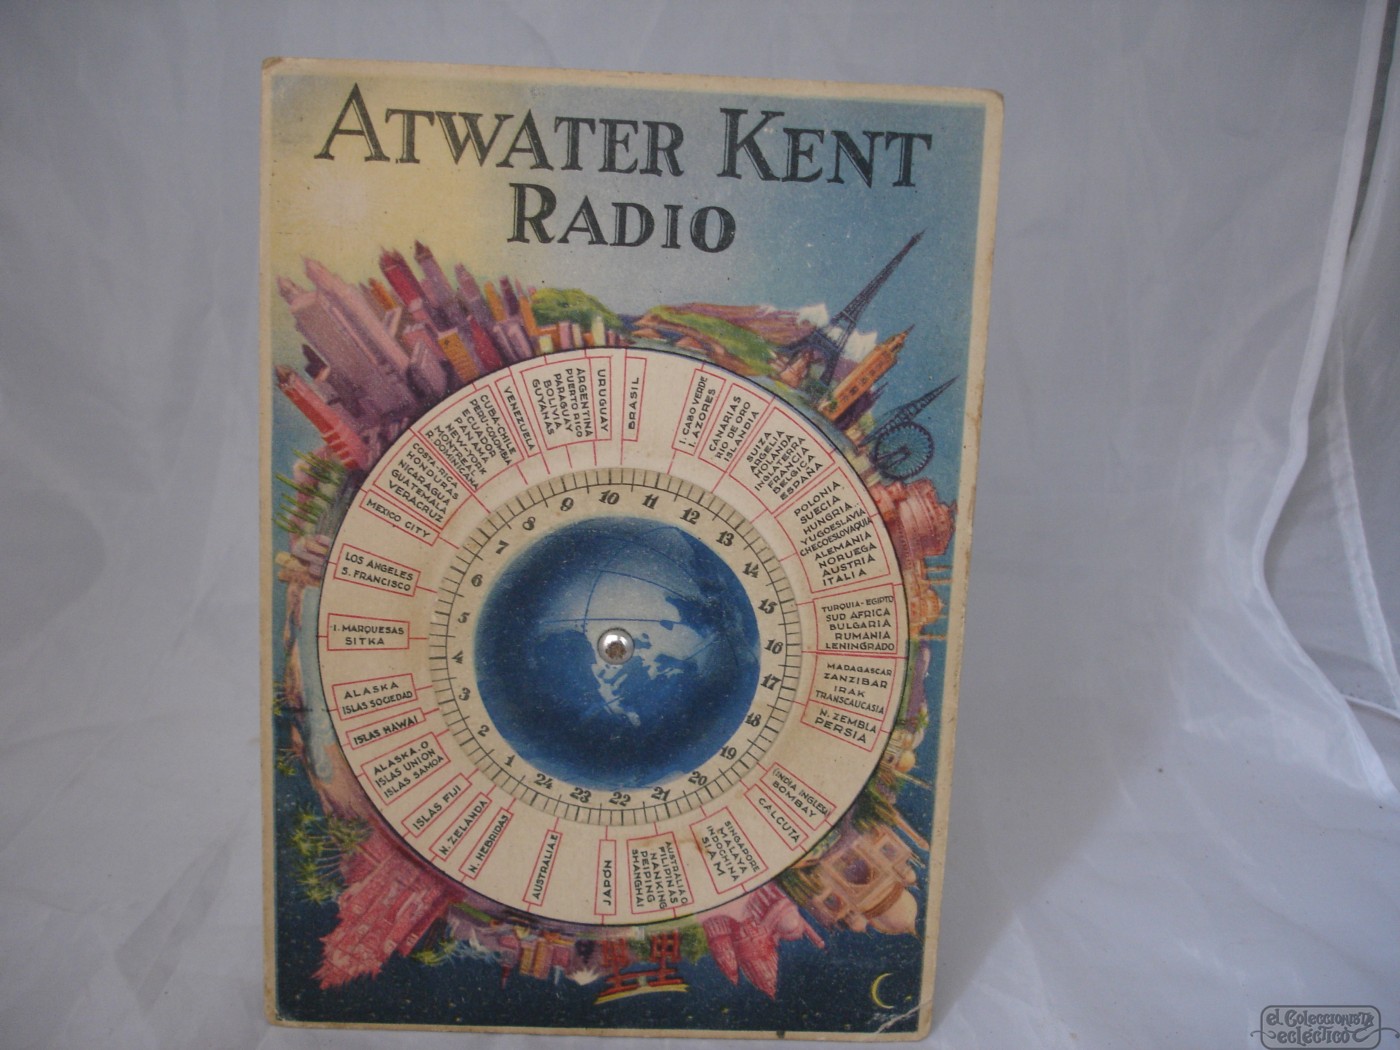 Atward Kent Radio Tanlr